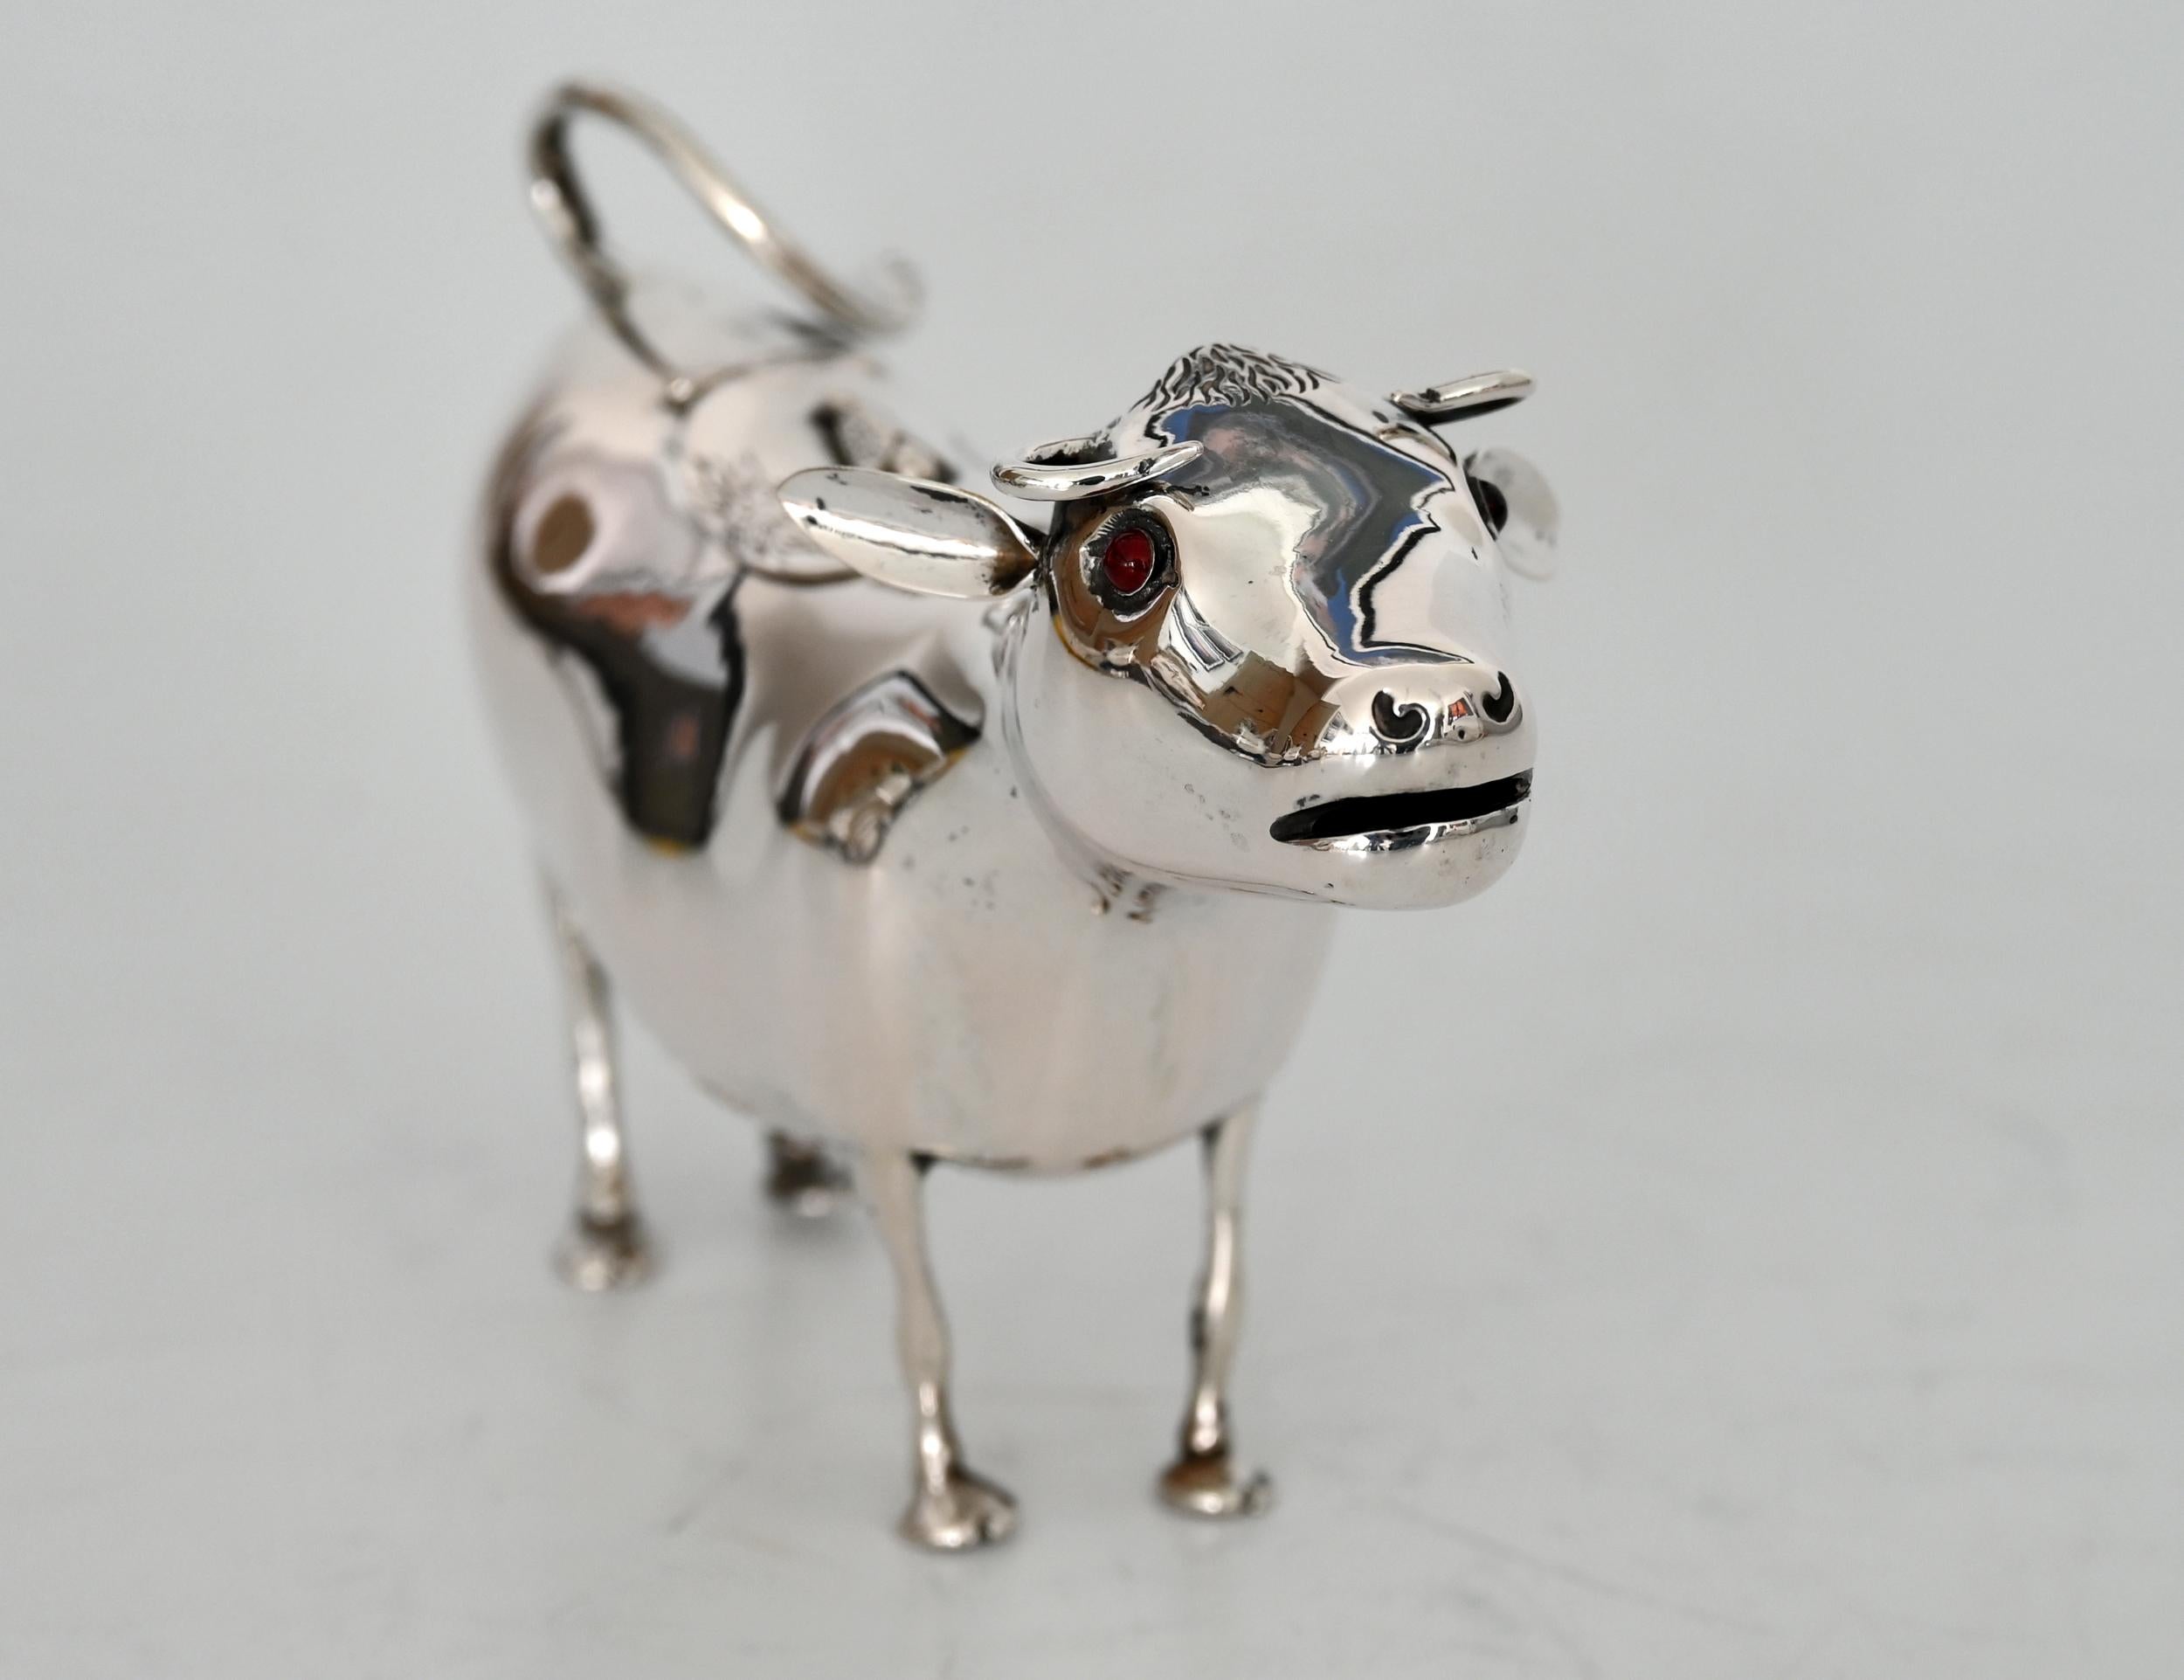 Ein Sahnegießer in Form einer Kuh aus Silber. Mit Hilfe des Deckels auf der Rückseite kann die Kuh mit Milch oder Sahne gefüllt werden. Der Griff ist leicht zu greifen und lässt sich gut zum Ausgießen verwenden. Der Deckel ist mit einer Fliege